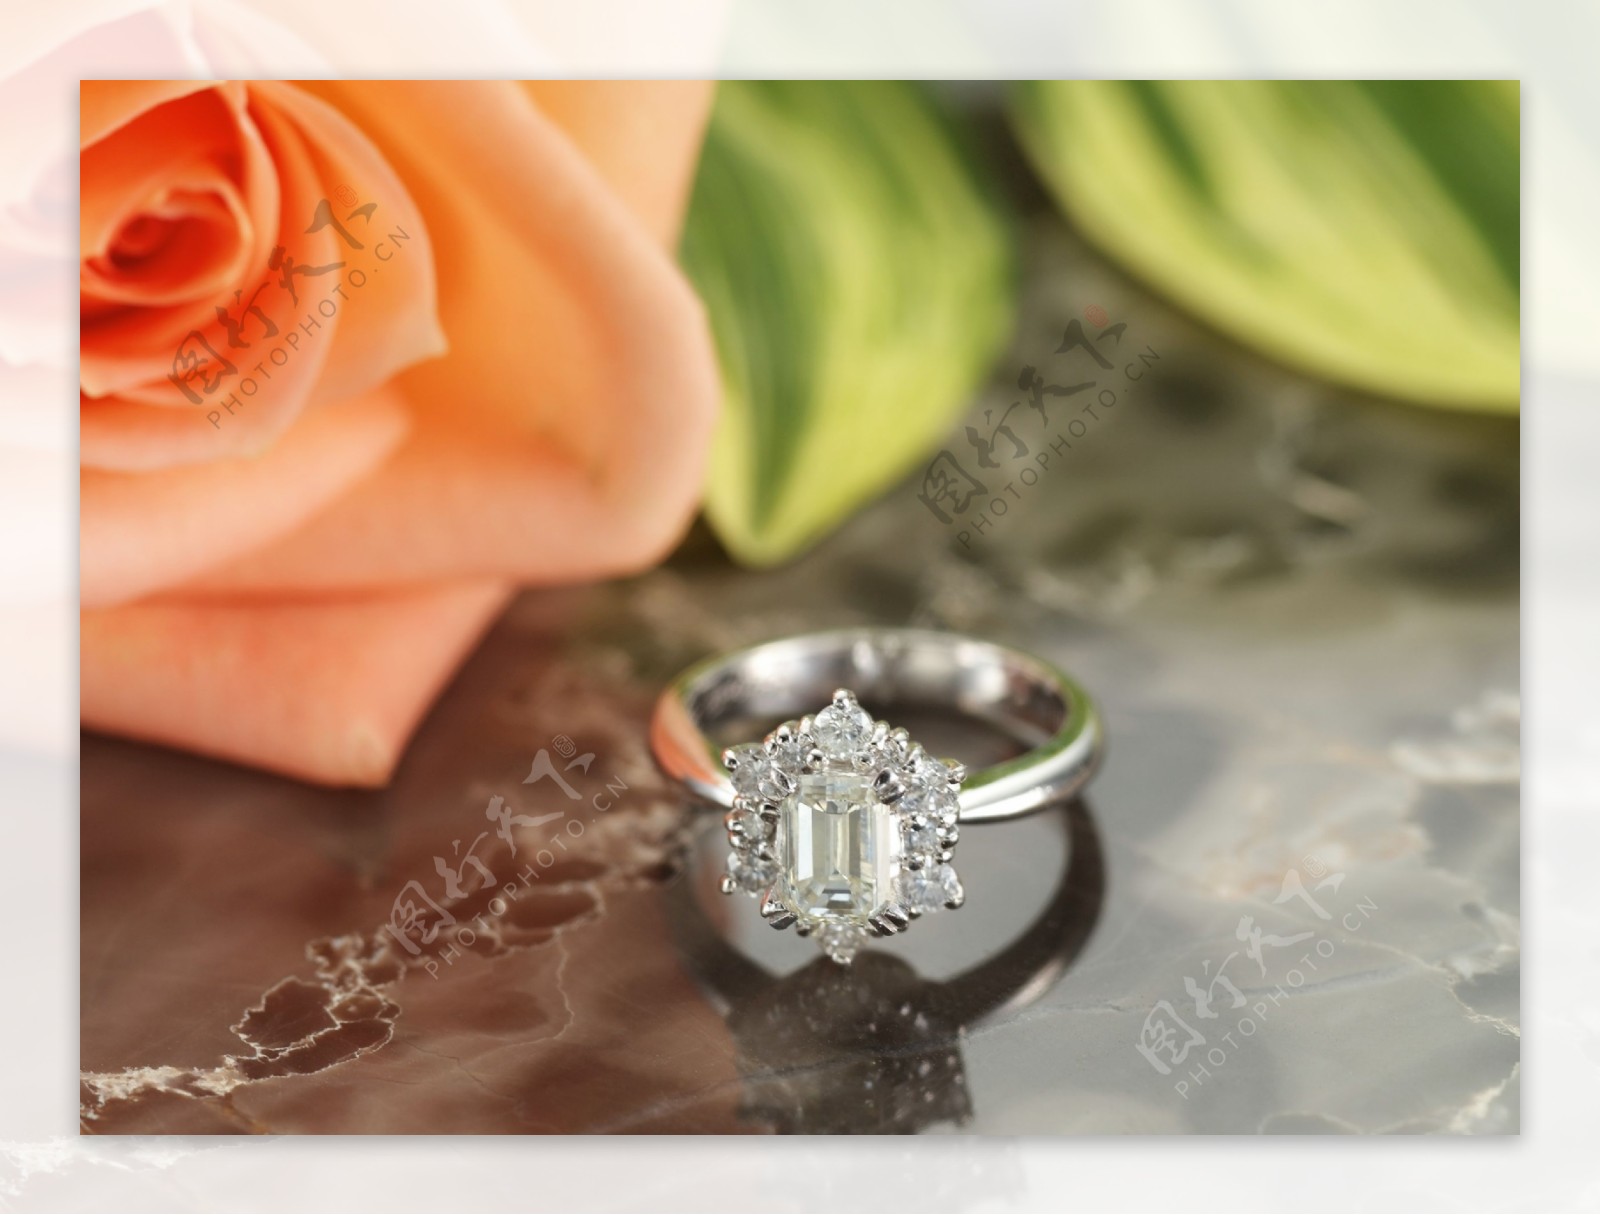 玫瑰花旁的钻石戒指图片